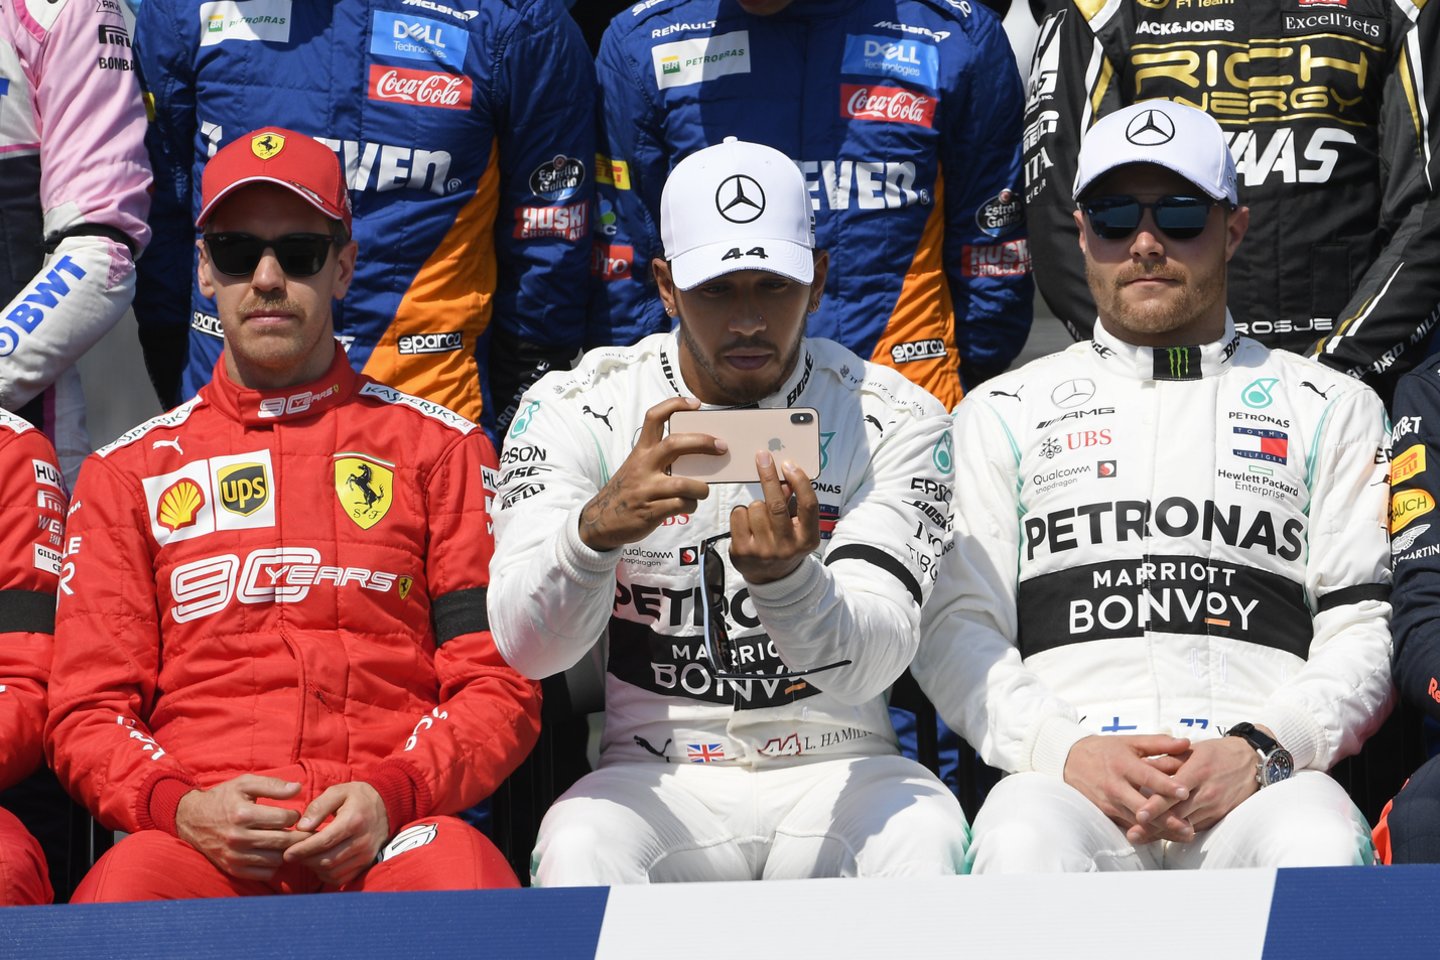 Prieš lenktynes favoritu buvo laikomas Lewisas Hamiltonas (viduryje), bet įspūdingą pergalę pelnė Valtteri Bottas (dešinėje).<br>AP nuotr.